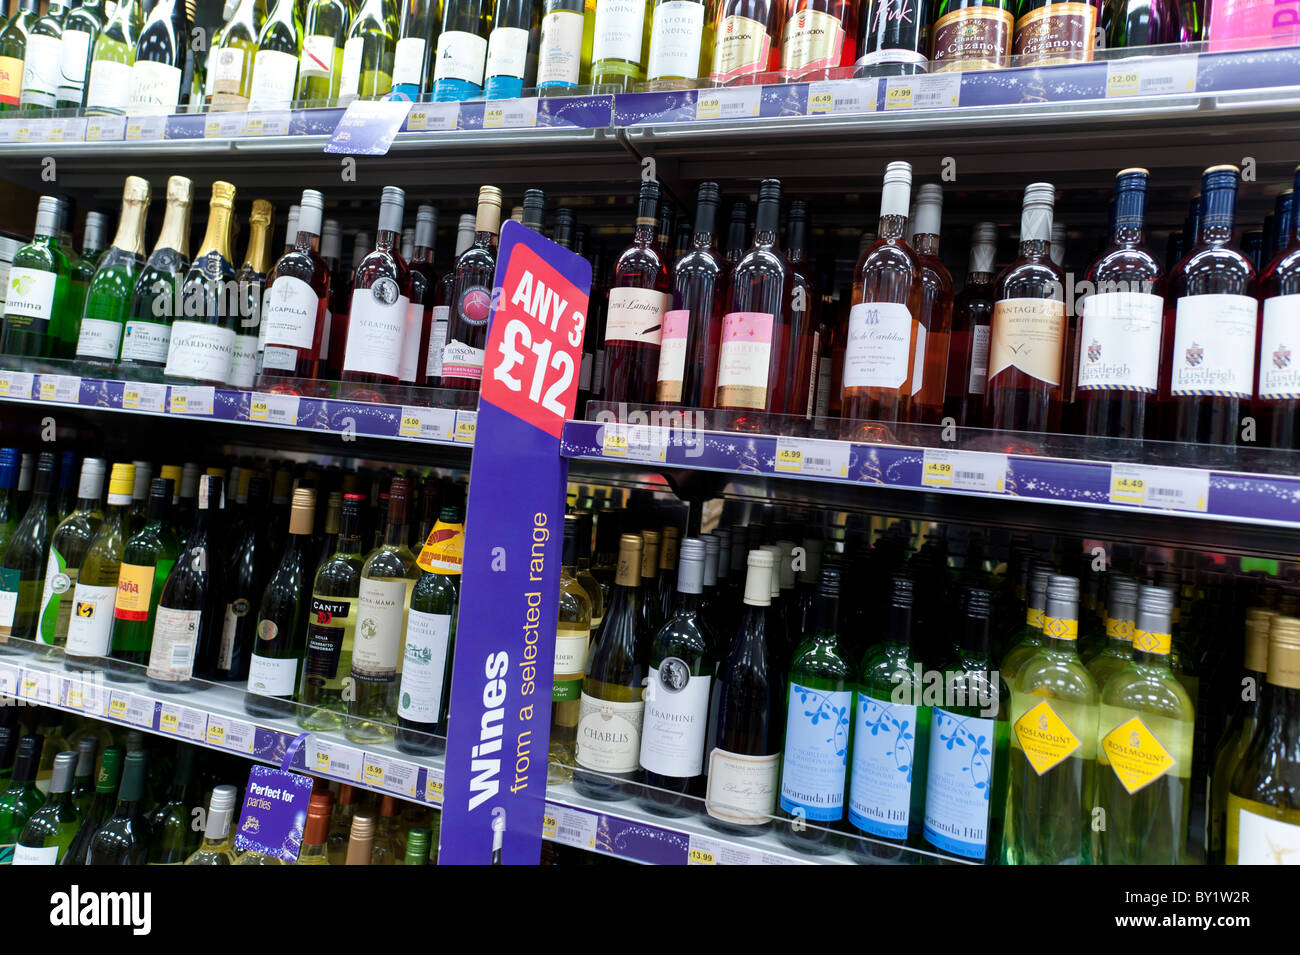 Flaschen Wein zum Verkauf in einem Coop-Supermarkt, UK Stockfotografie -  Alamy